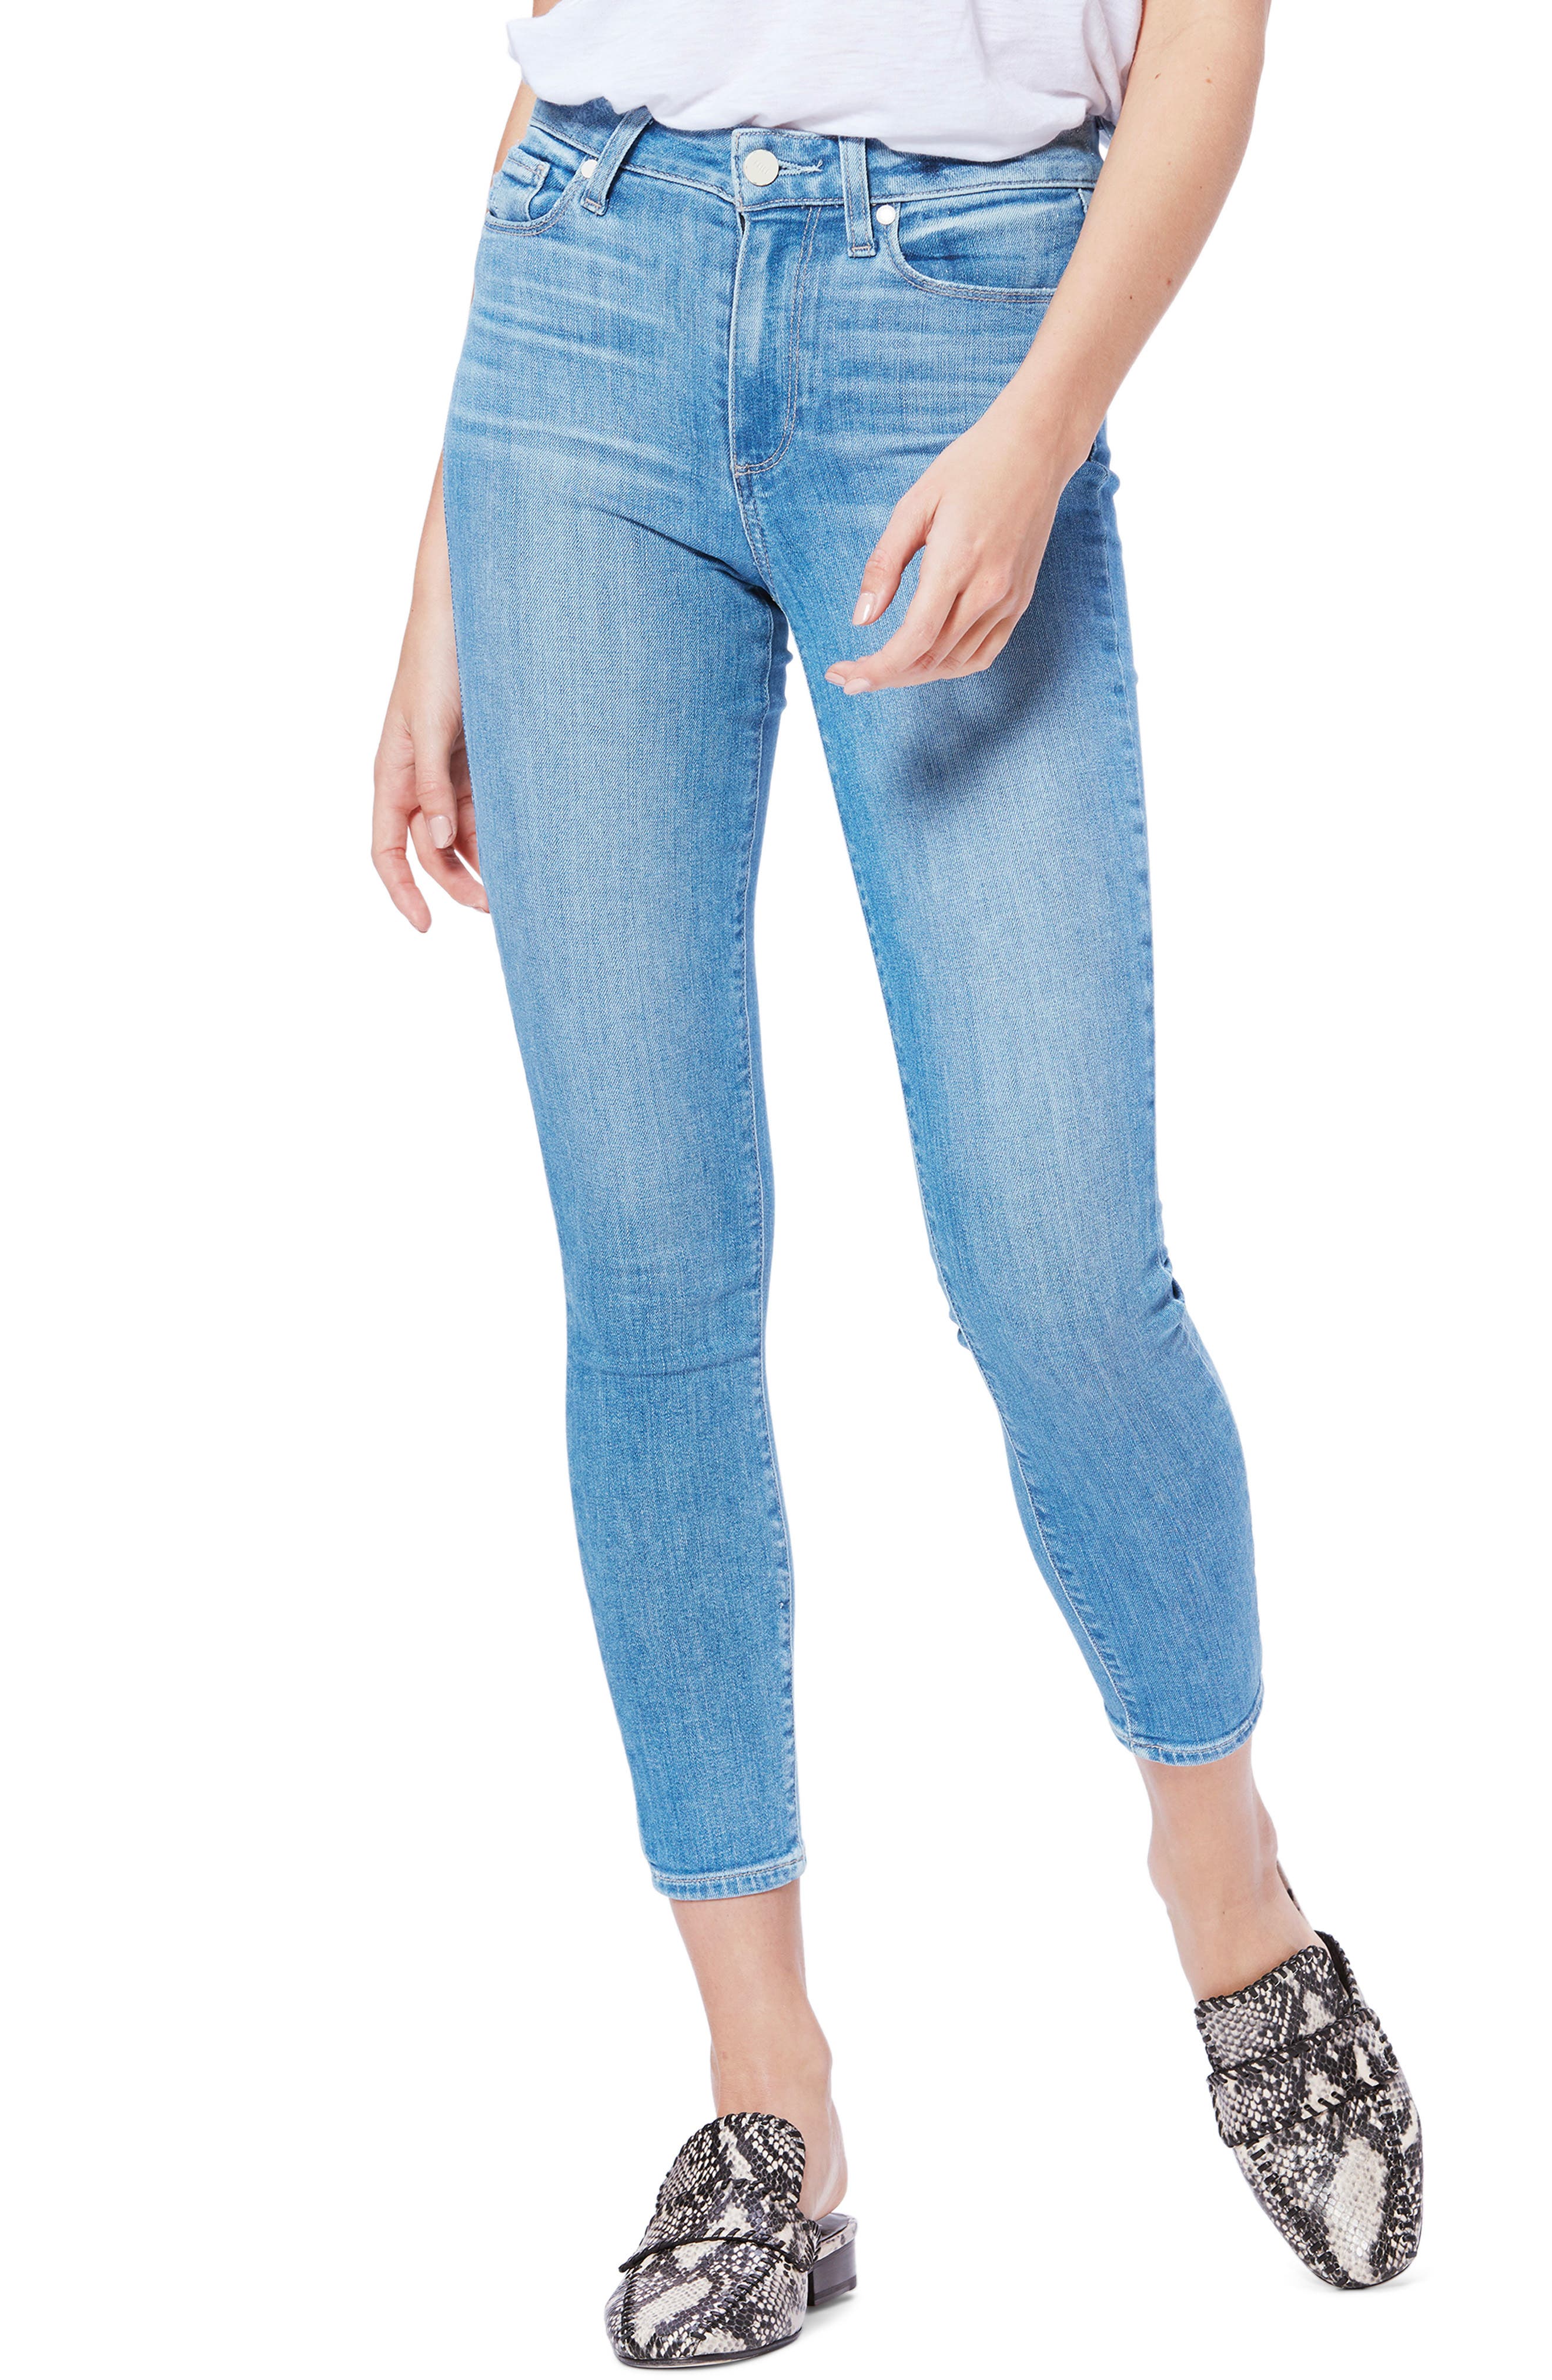 paige jeans hoxton crop